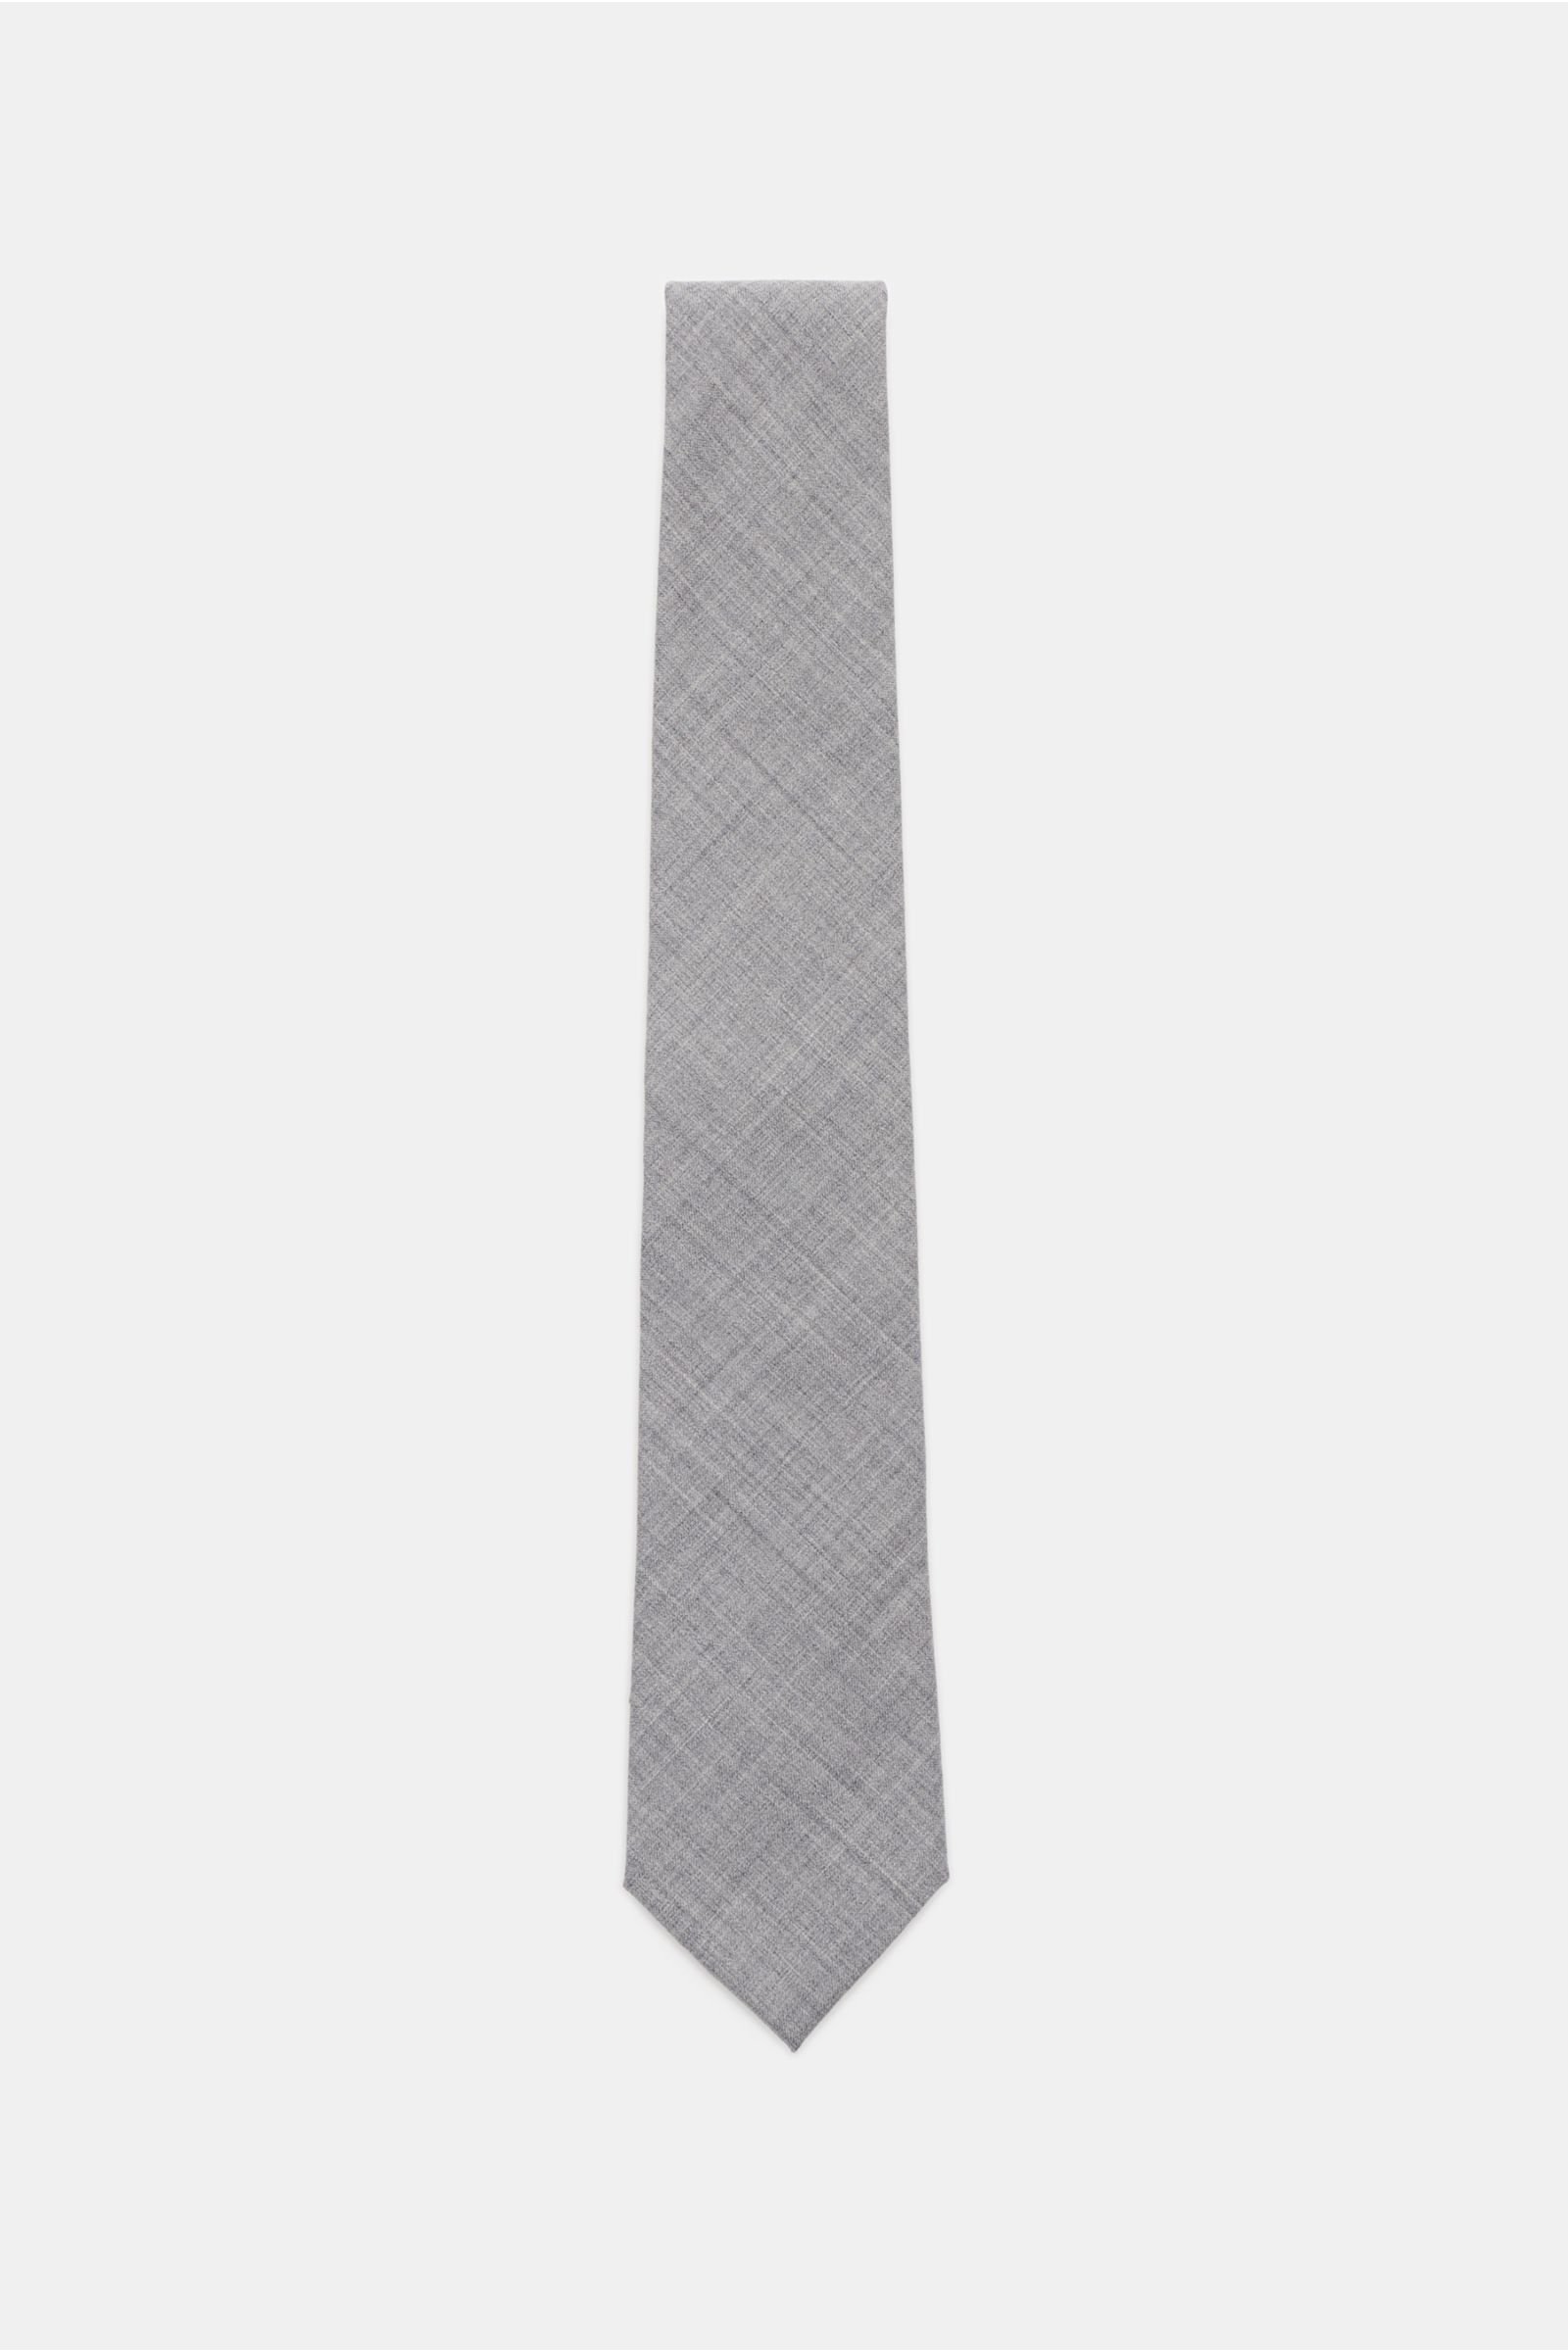 Wool tie grey